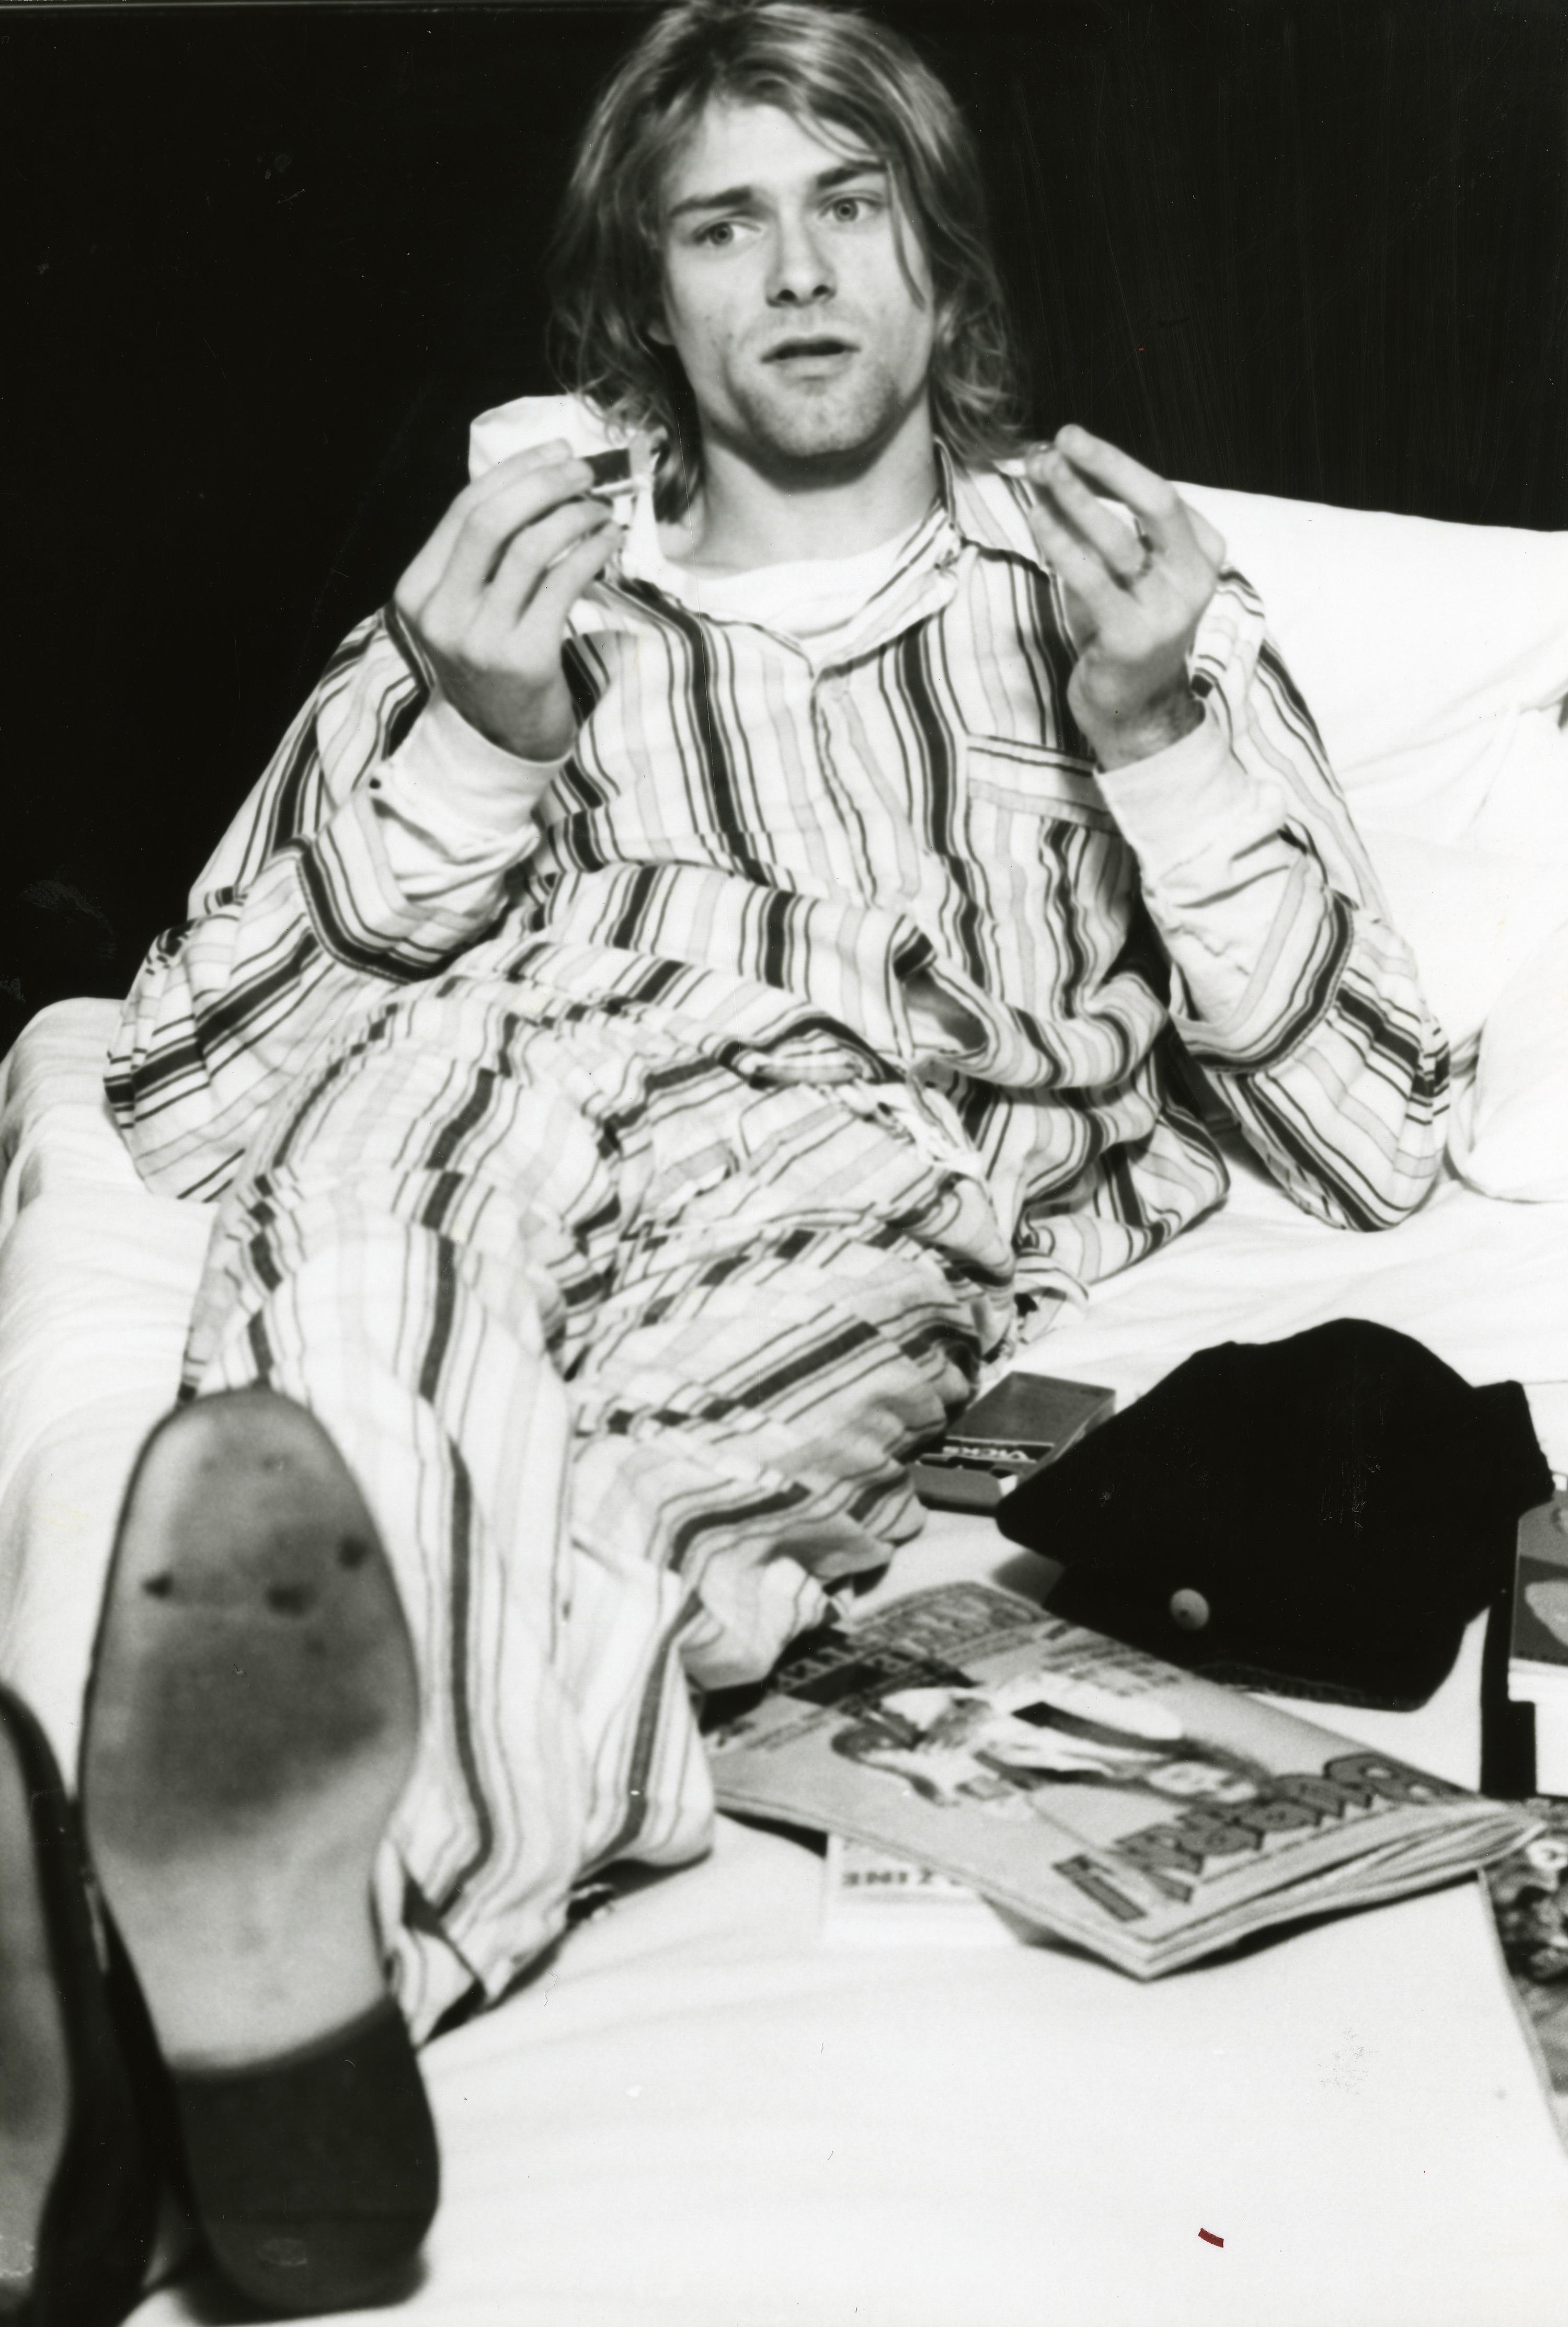 Kurt Cobain of Nirvana, lying in bed wearing pyjamas in Roppongi Prince Hotel in Tokyo, Japan 1992